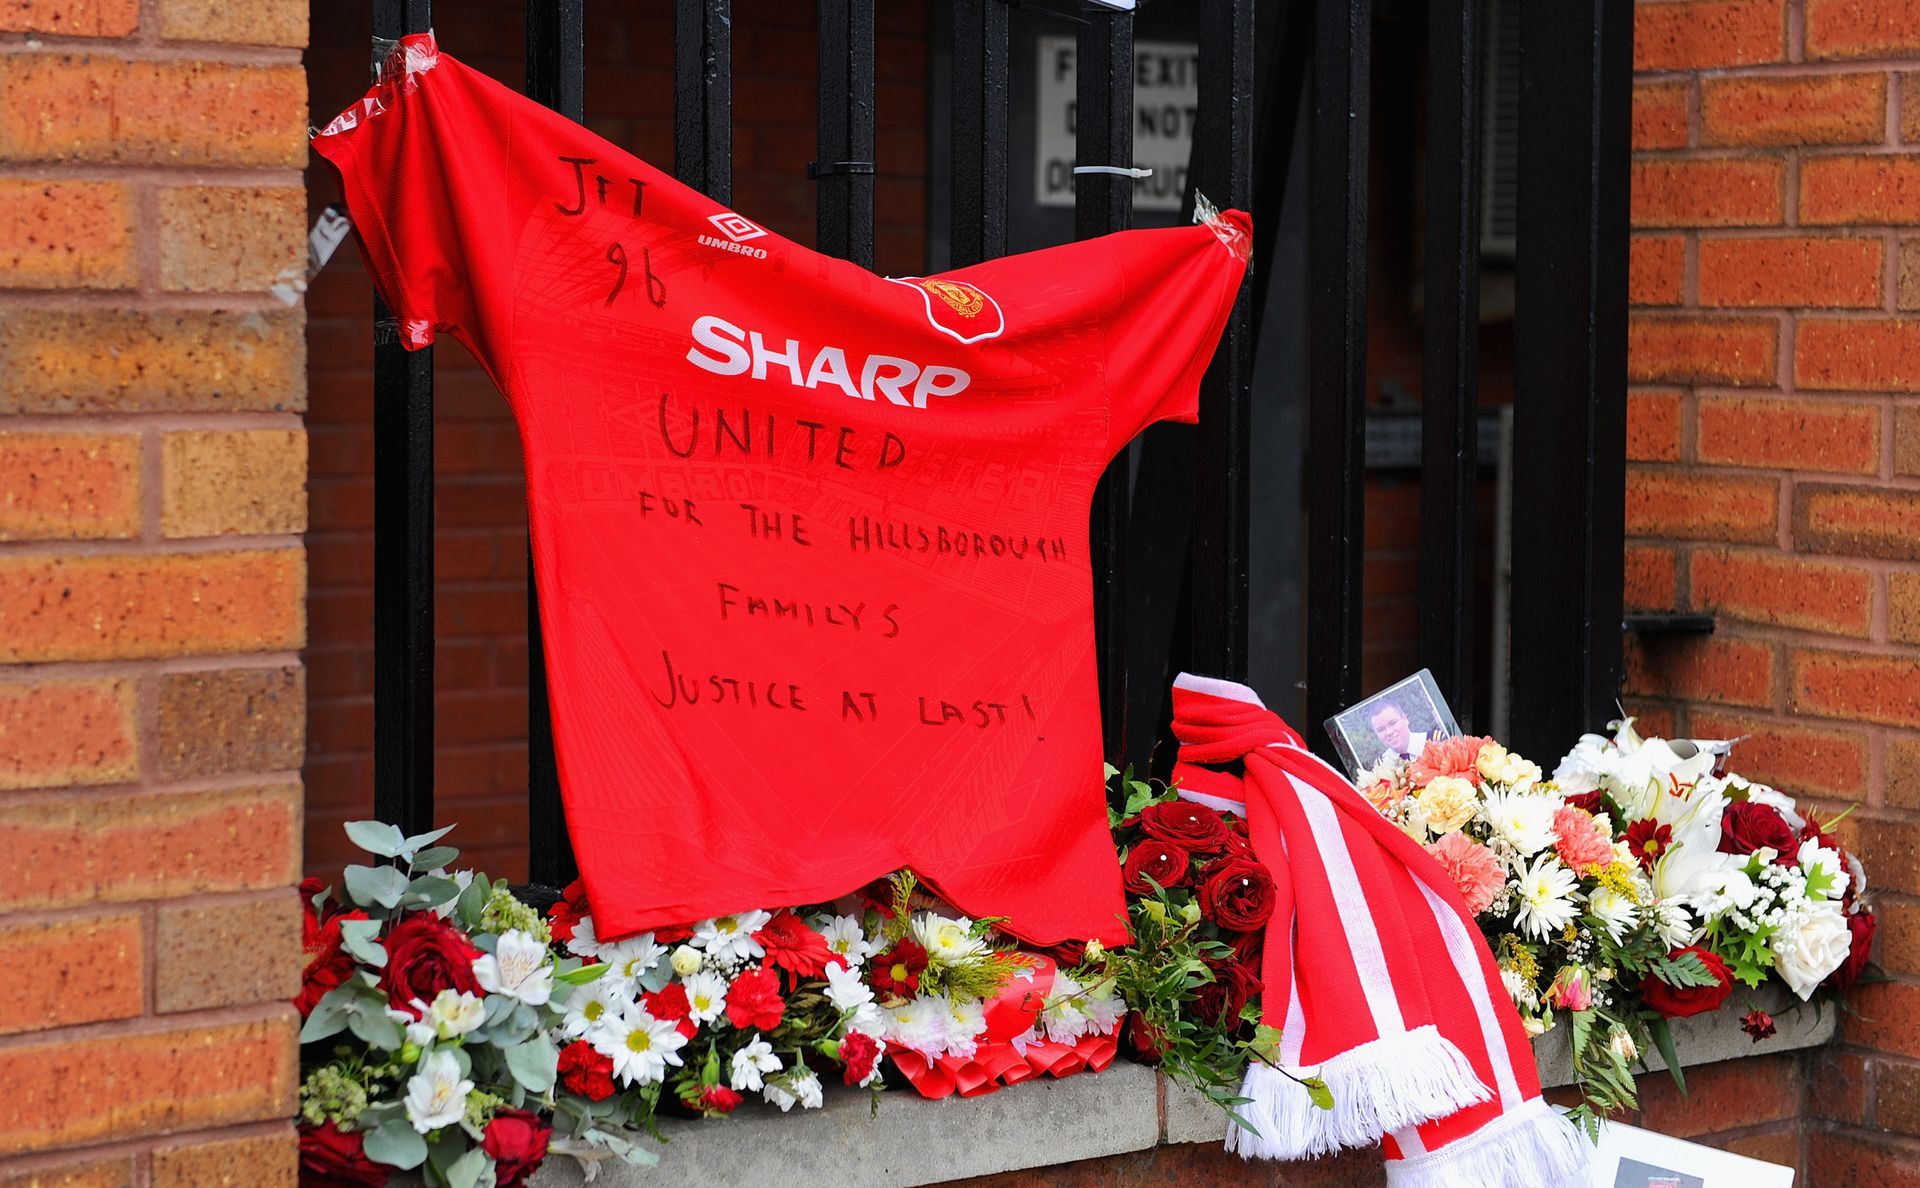 Фланелка на големия футболен враг на Ливърпул - Манчестър Юнайтед, е увиснала до мемориала за жертвите. Солидарност и от този непримирим на терена противник